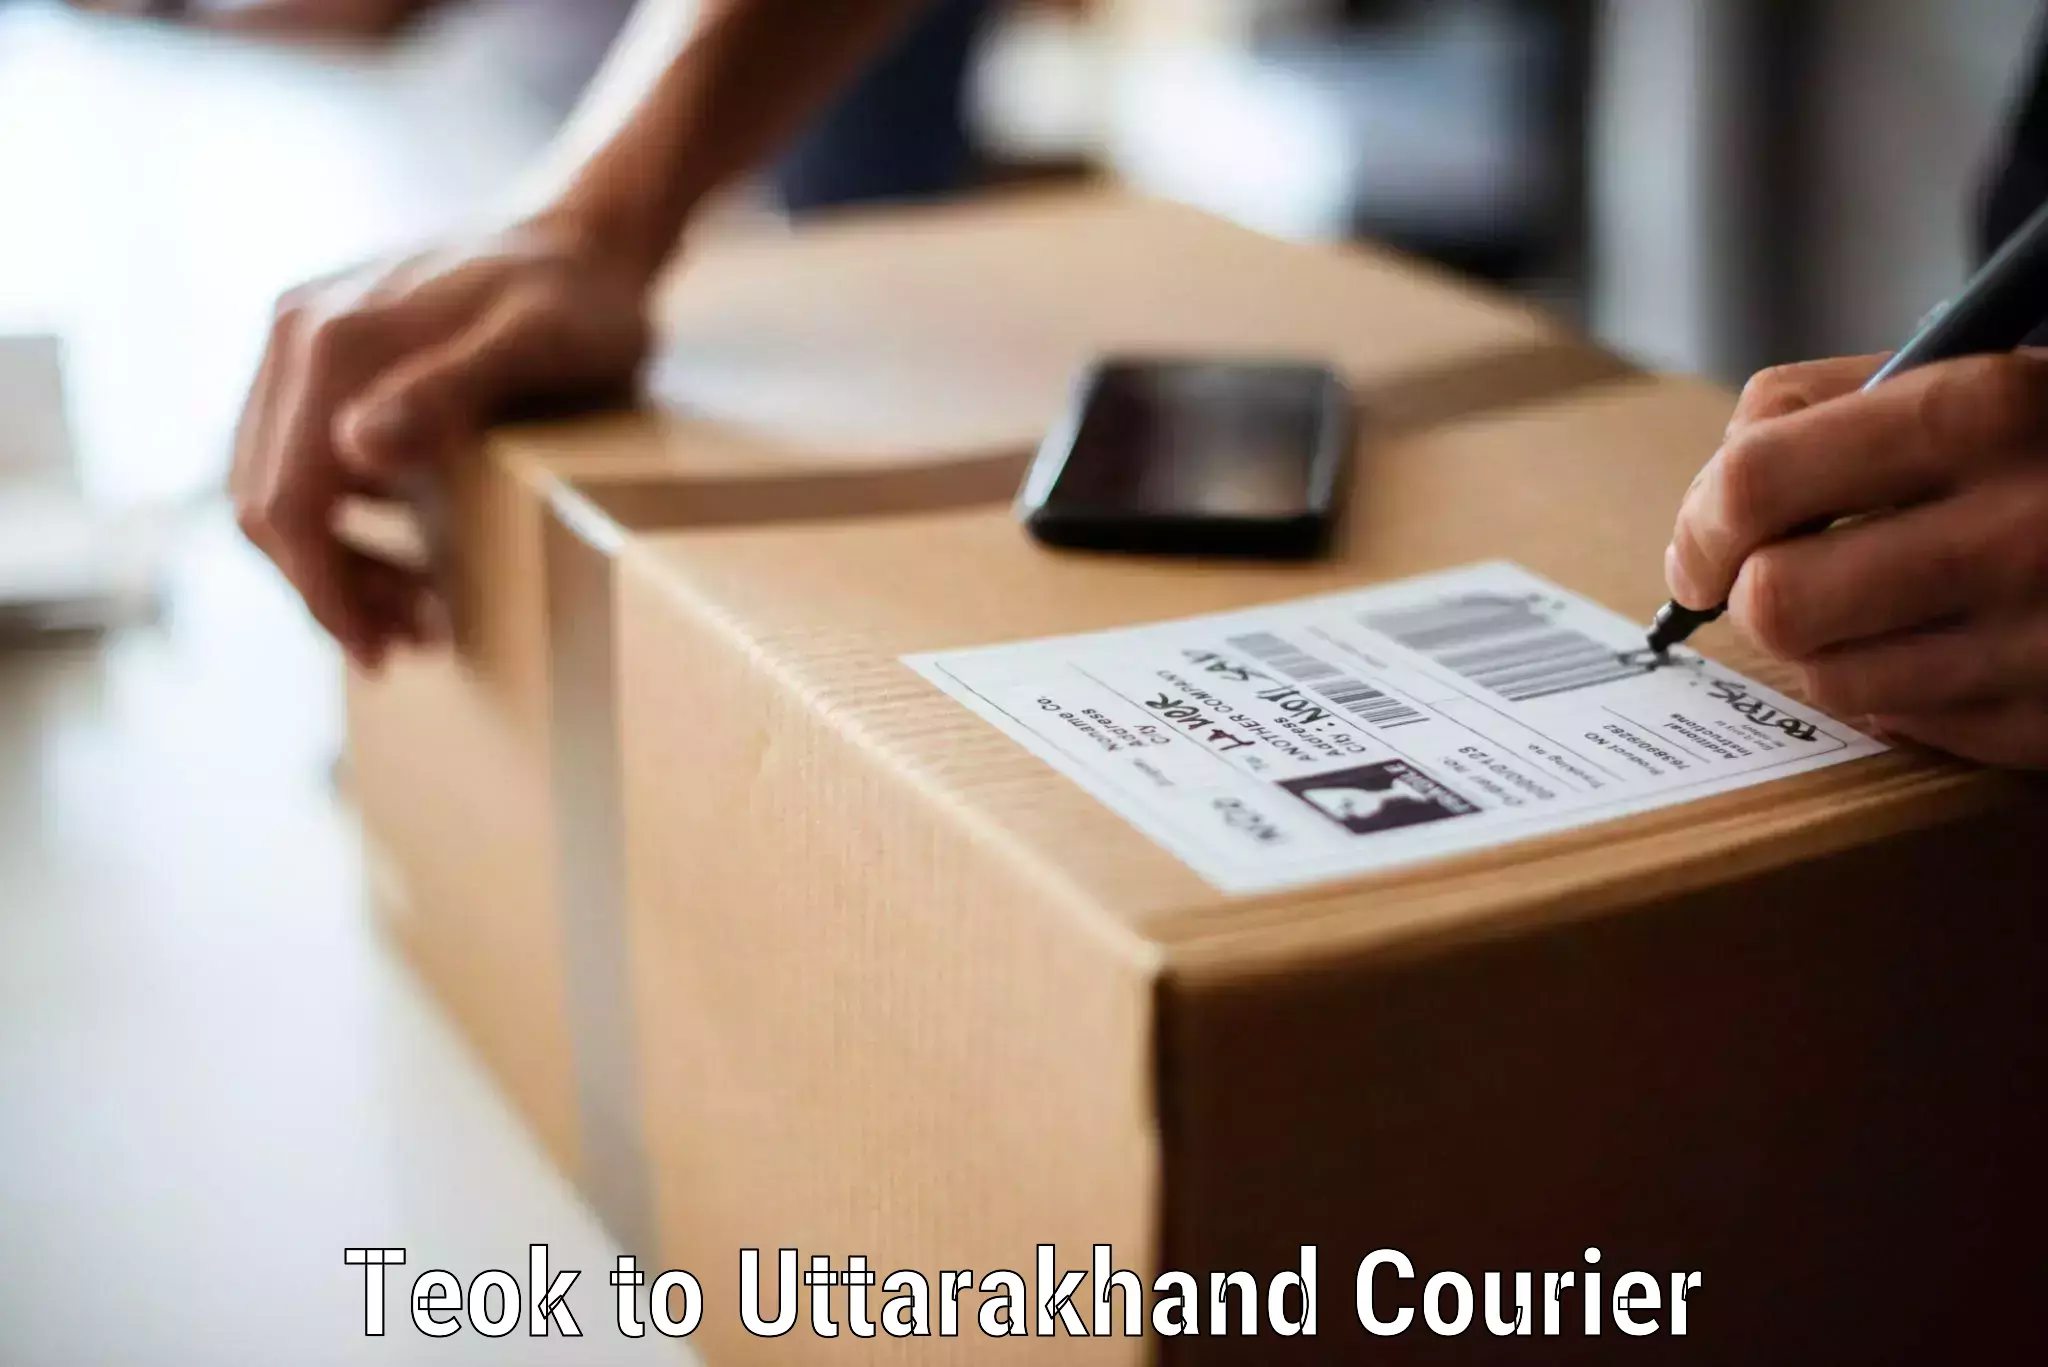 Furniture transport experts Teok to Dwarahat